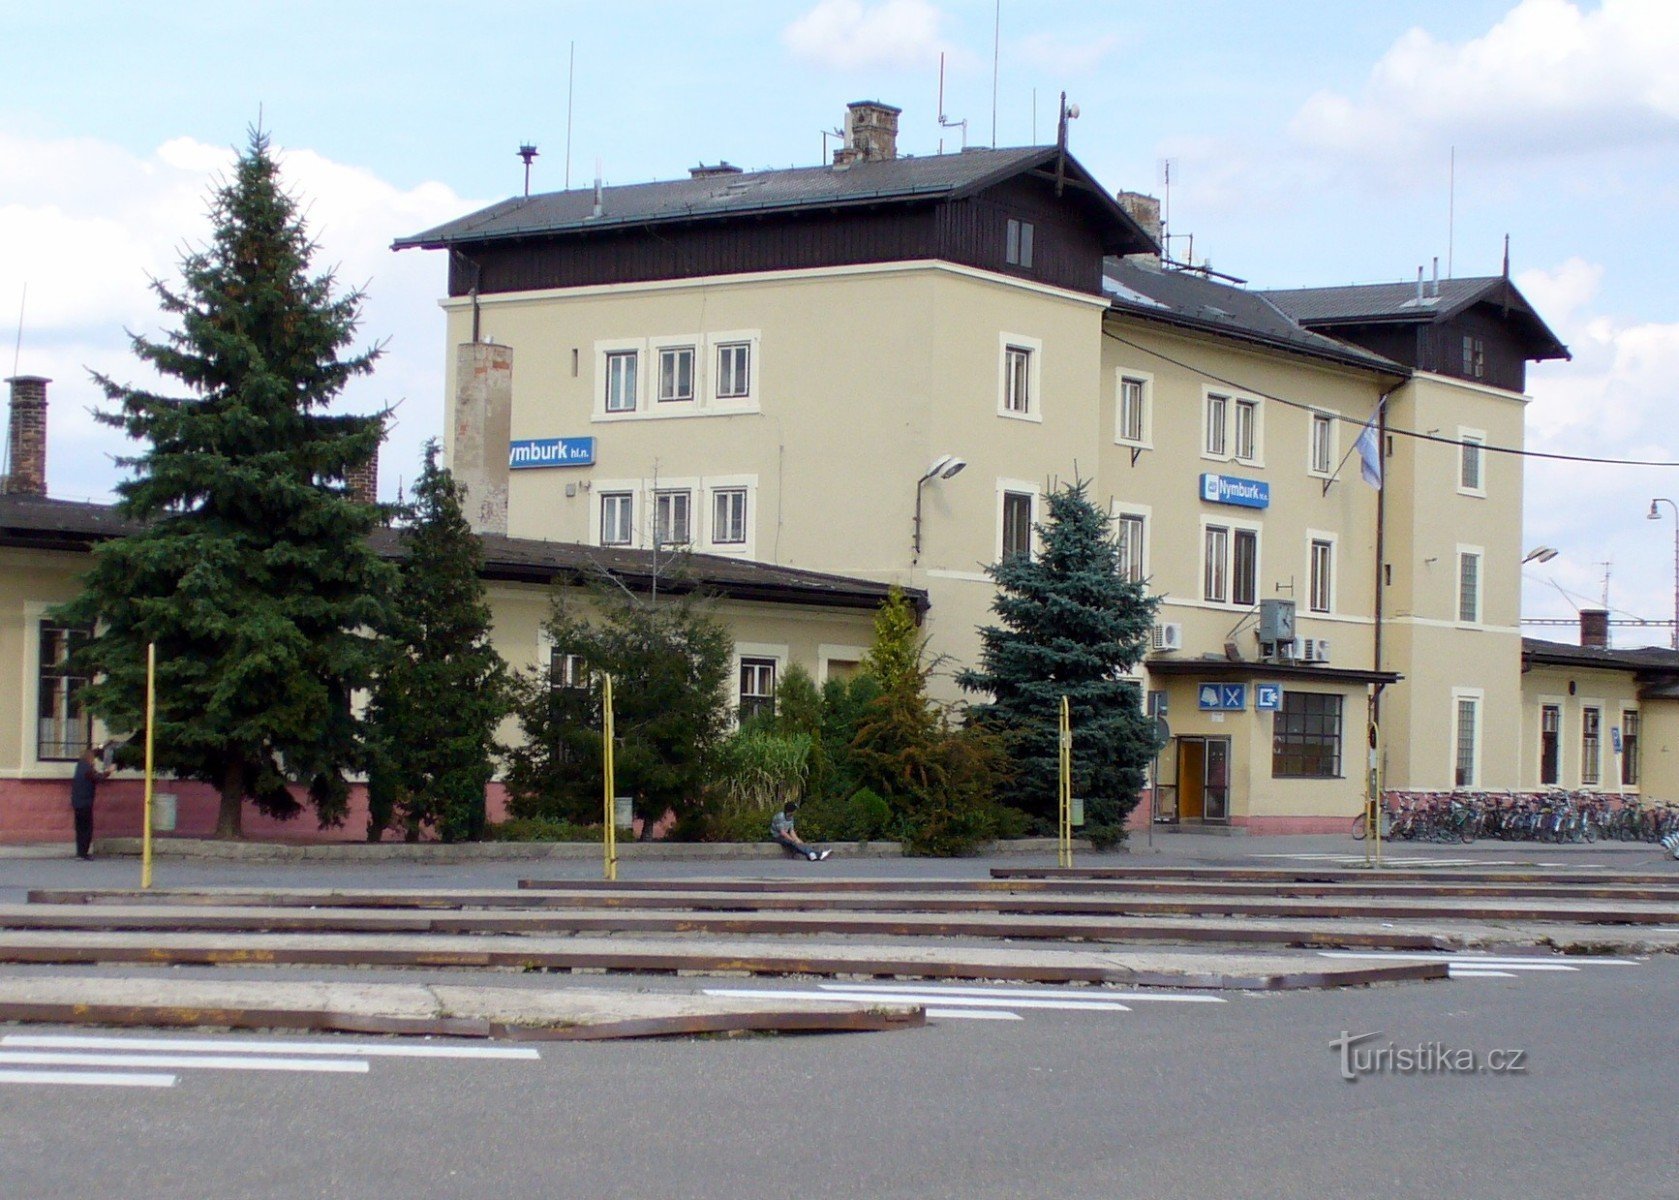 ČD centralstation (sedan 1870)